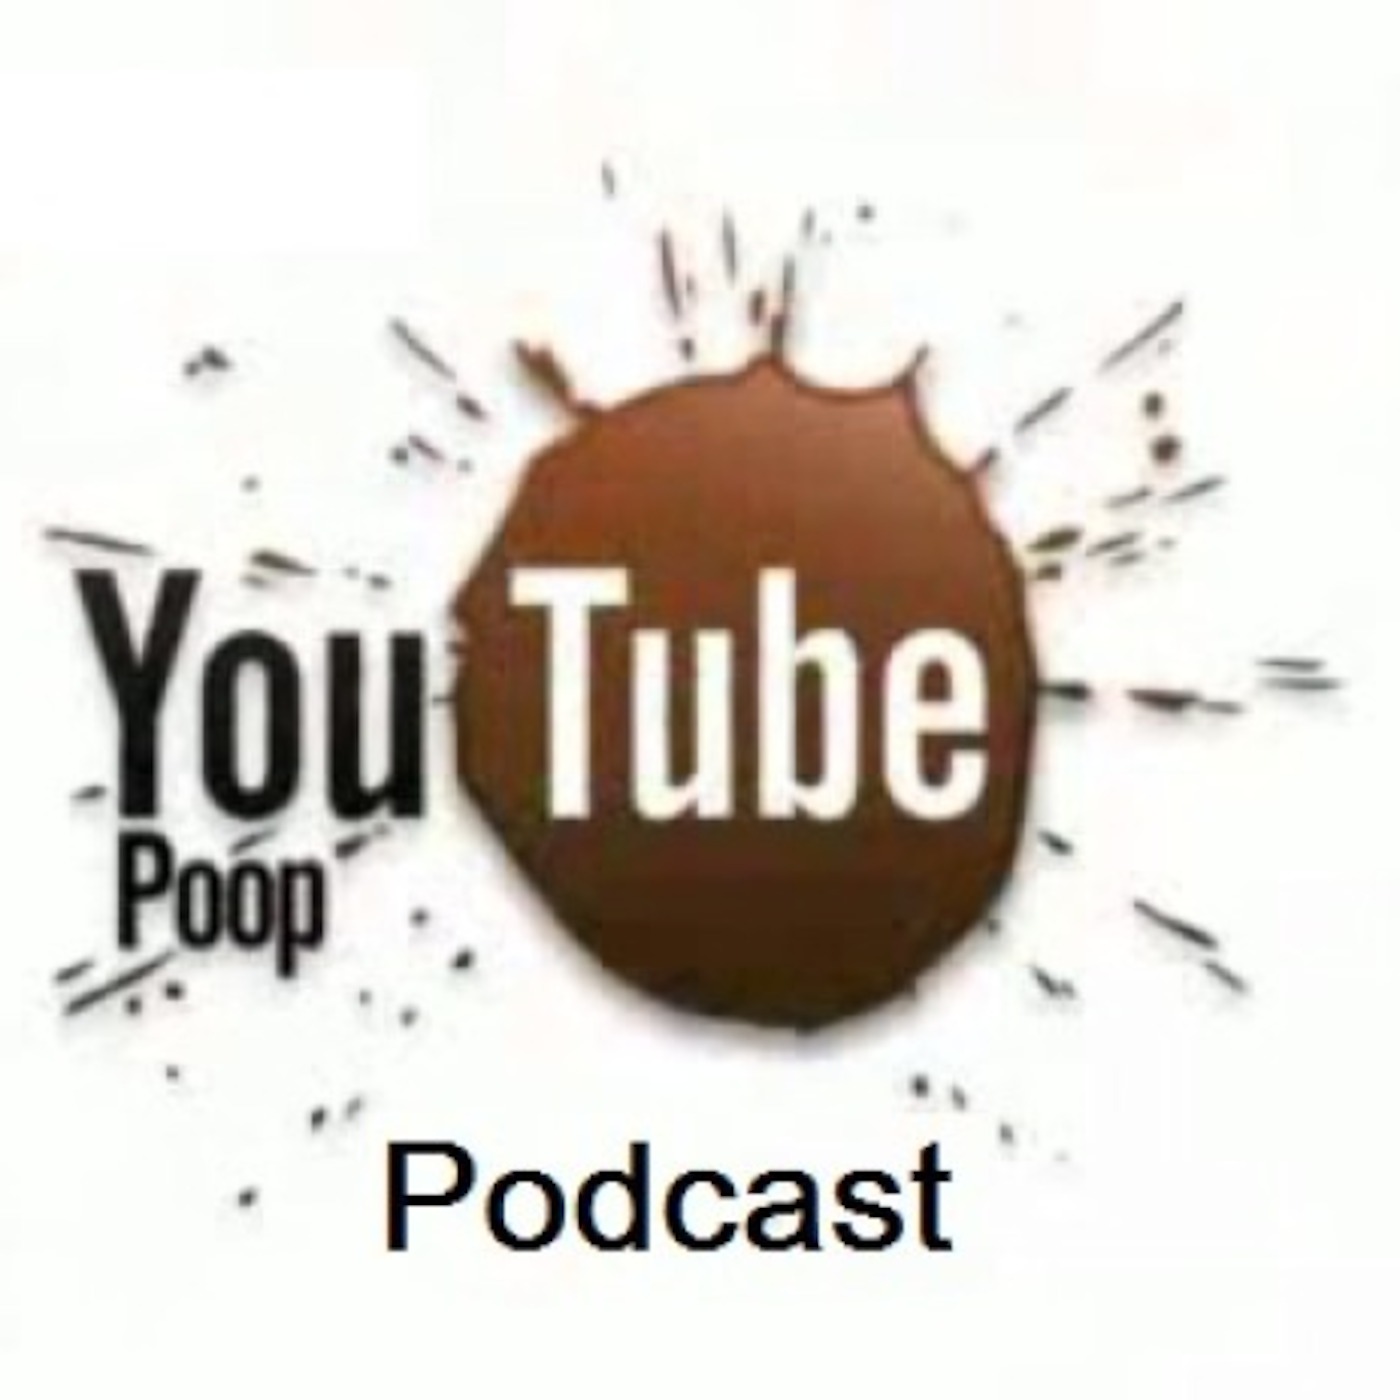 YouTubePoopPodcast